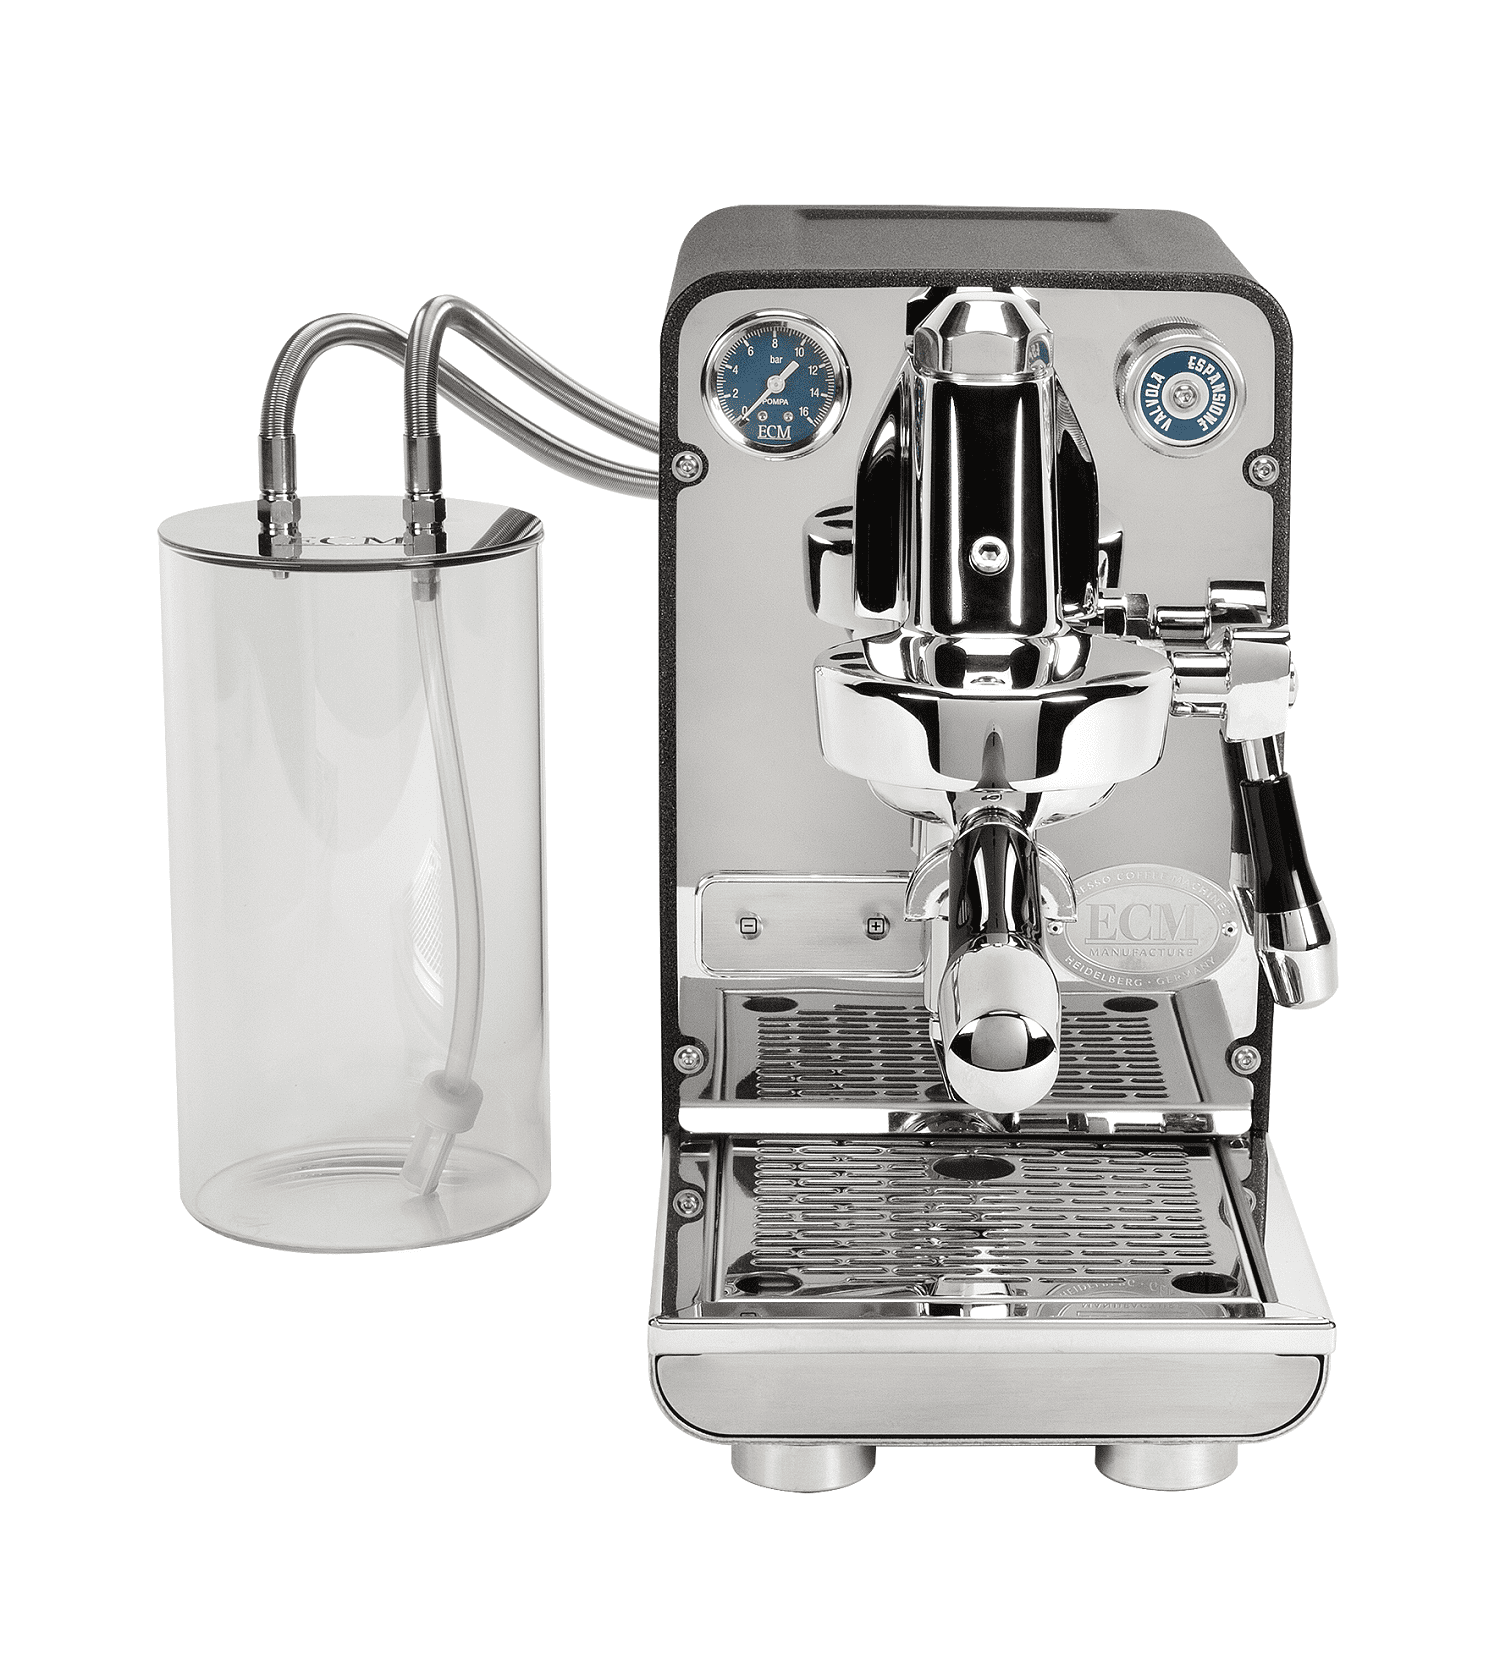 ECM Puristika PID Anthrazit - Espressomaschine